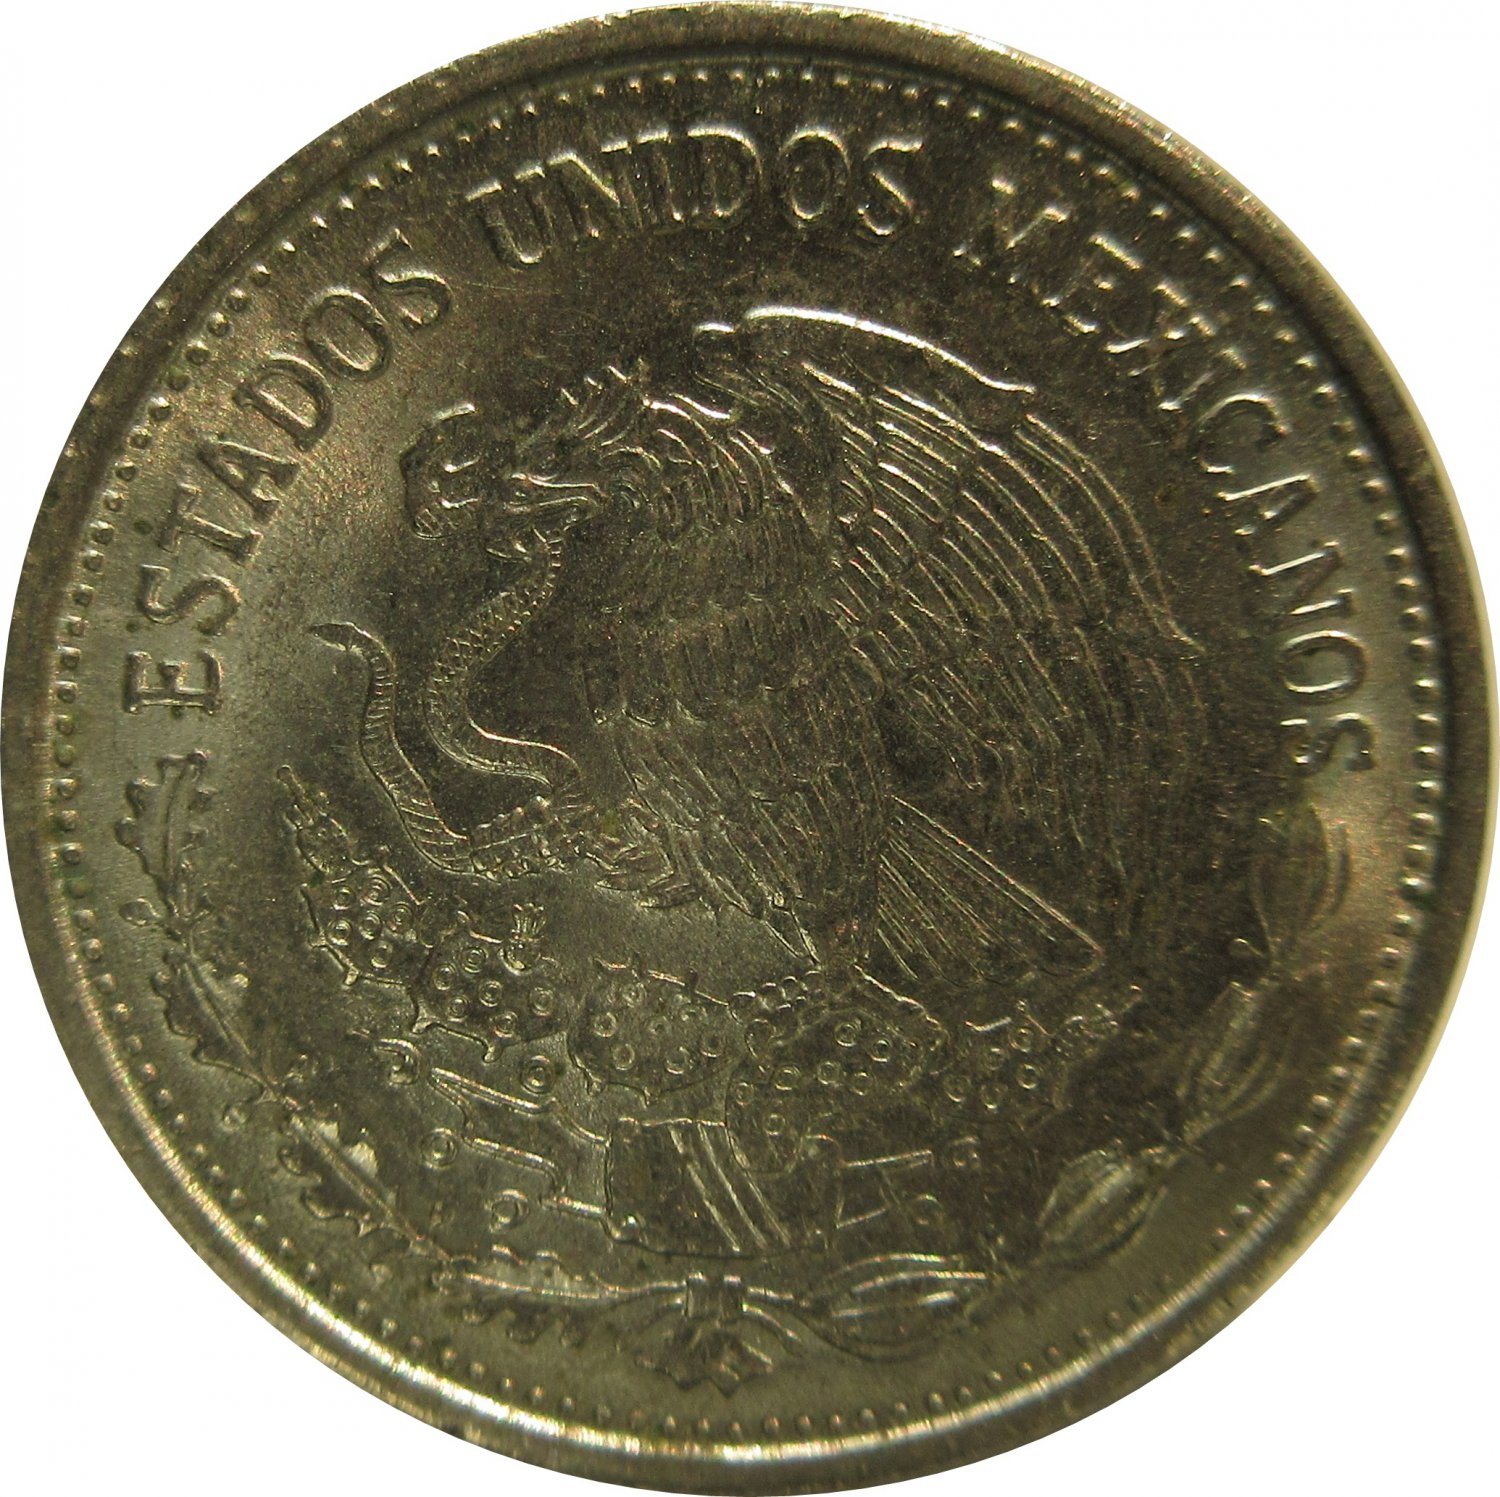 Mexico 1987 50 Peso